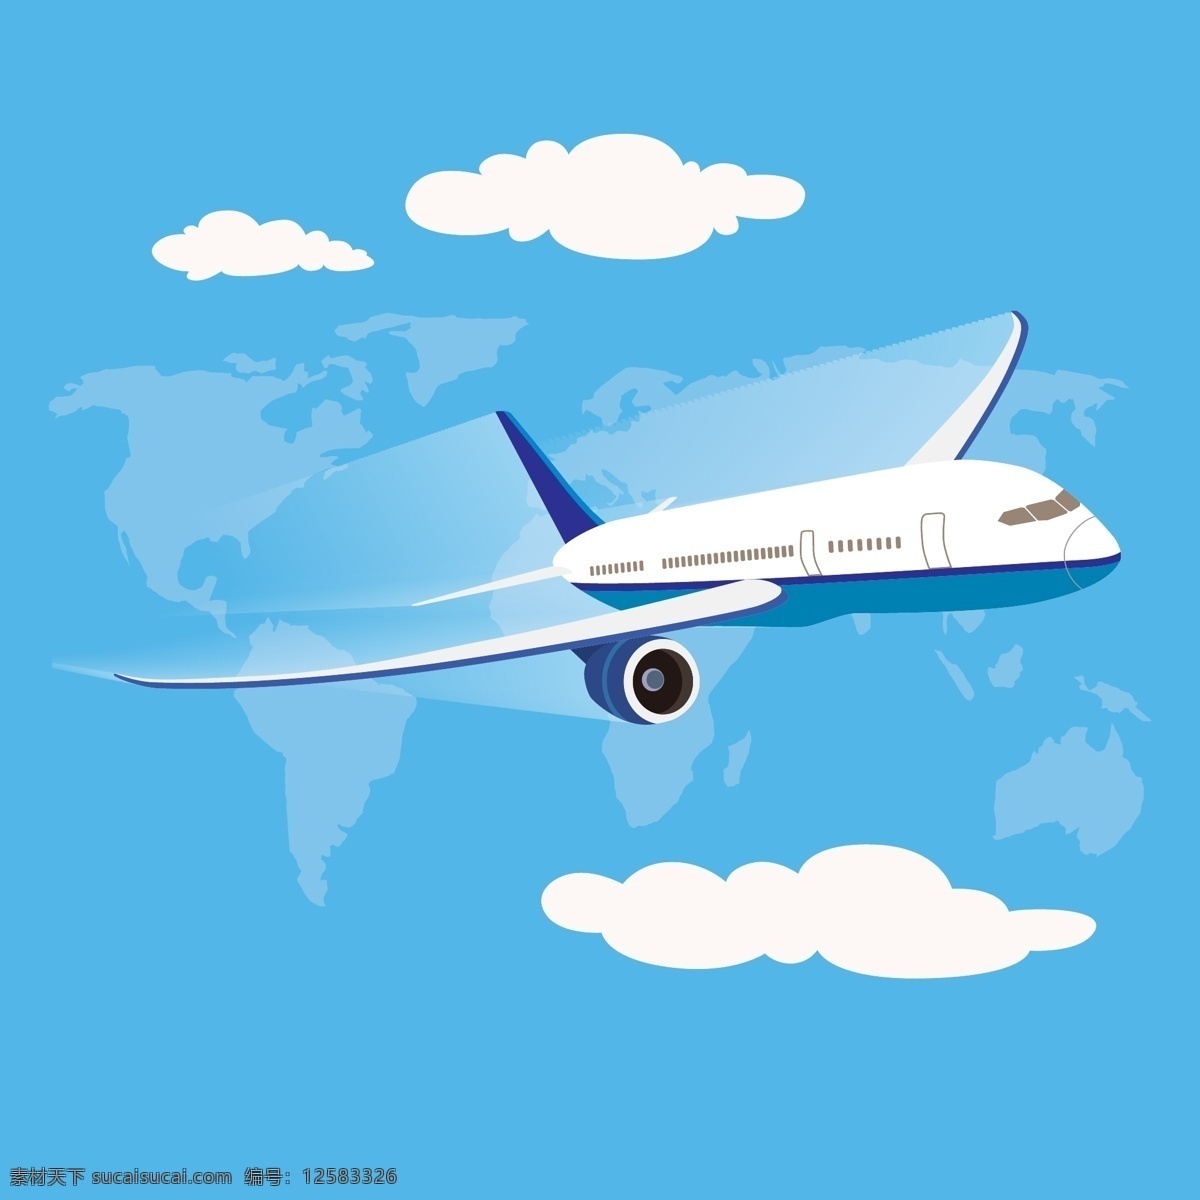 蓝天 中 翱翔 飞机 云 天空 旅行 客机 矢量图 ai格式 卡通飞机 现代科技 交通工具